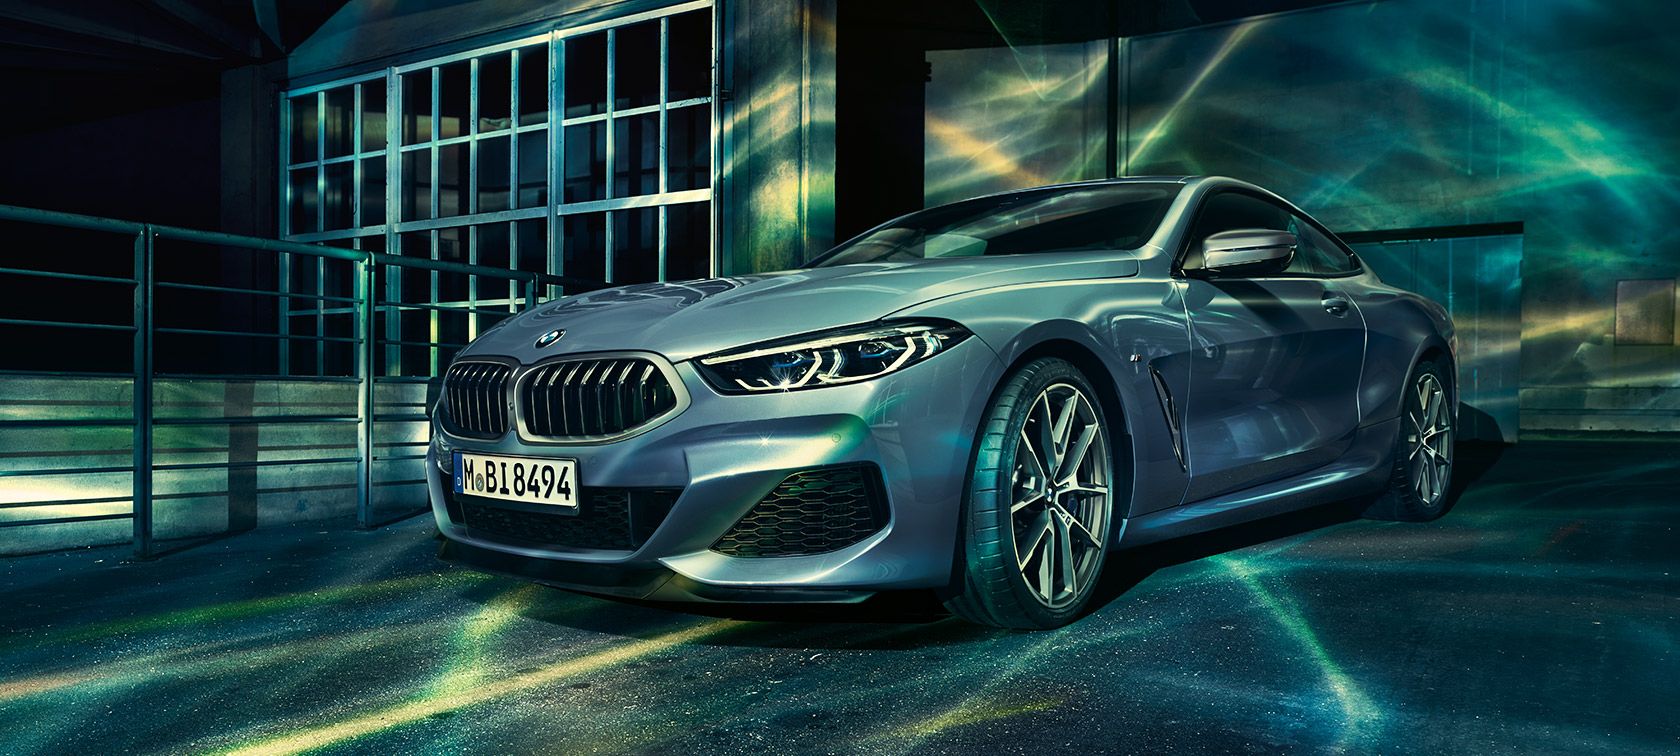 Descubre el nuevo BMW Serie 8